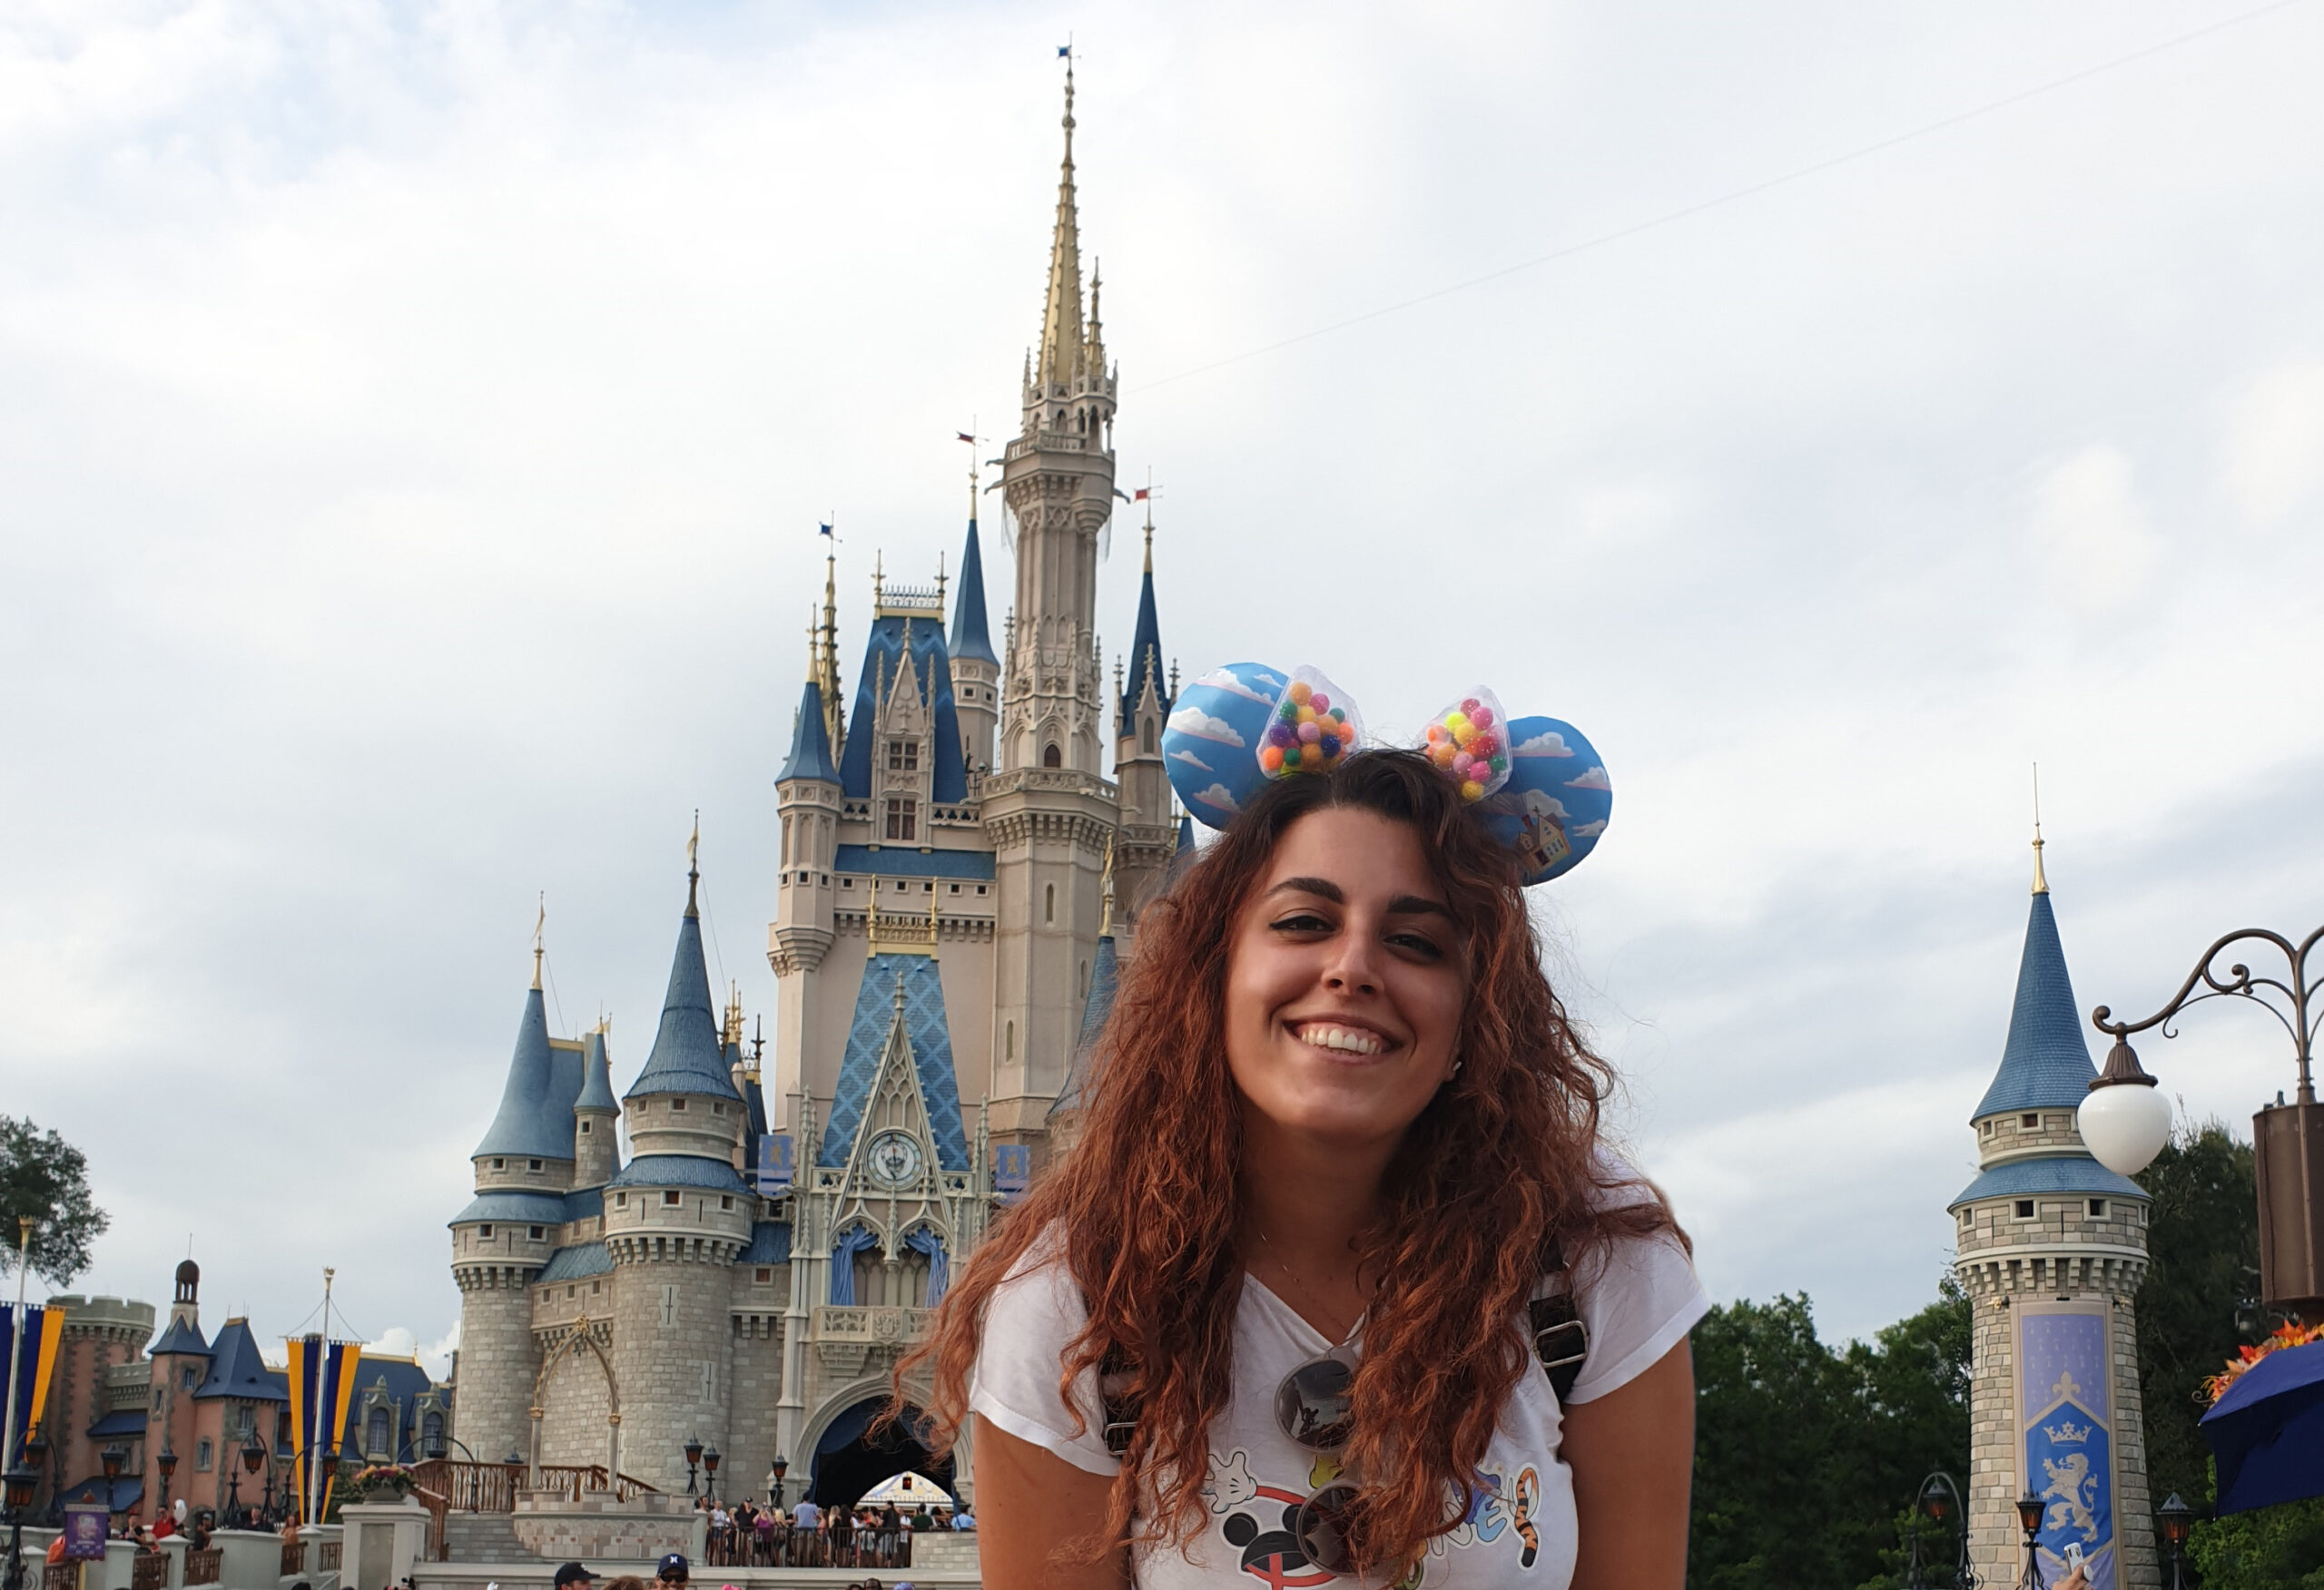 Carlotta sorridente davanti al castello di DisneyWorld a Orlando, in Florida. Indossa una t-shirt con la scritta Disney ed ha le orecchie di Topolino in testa.